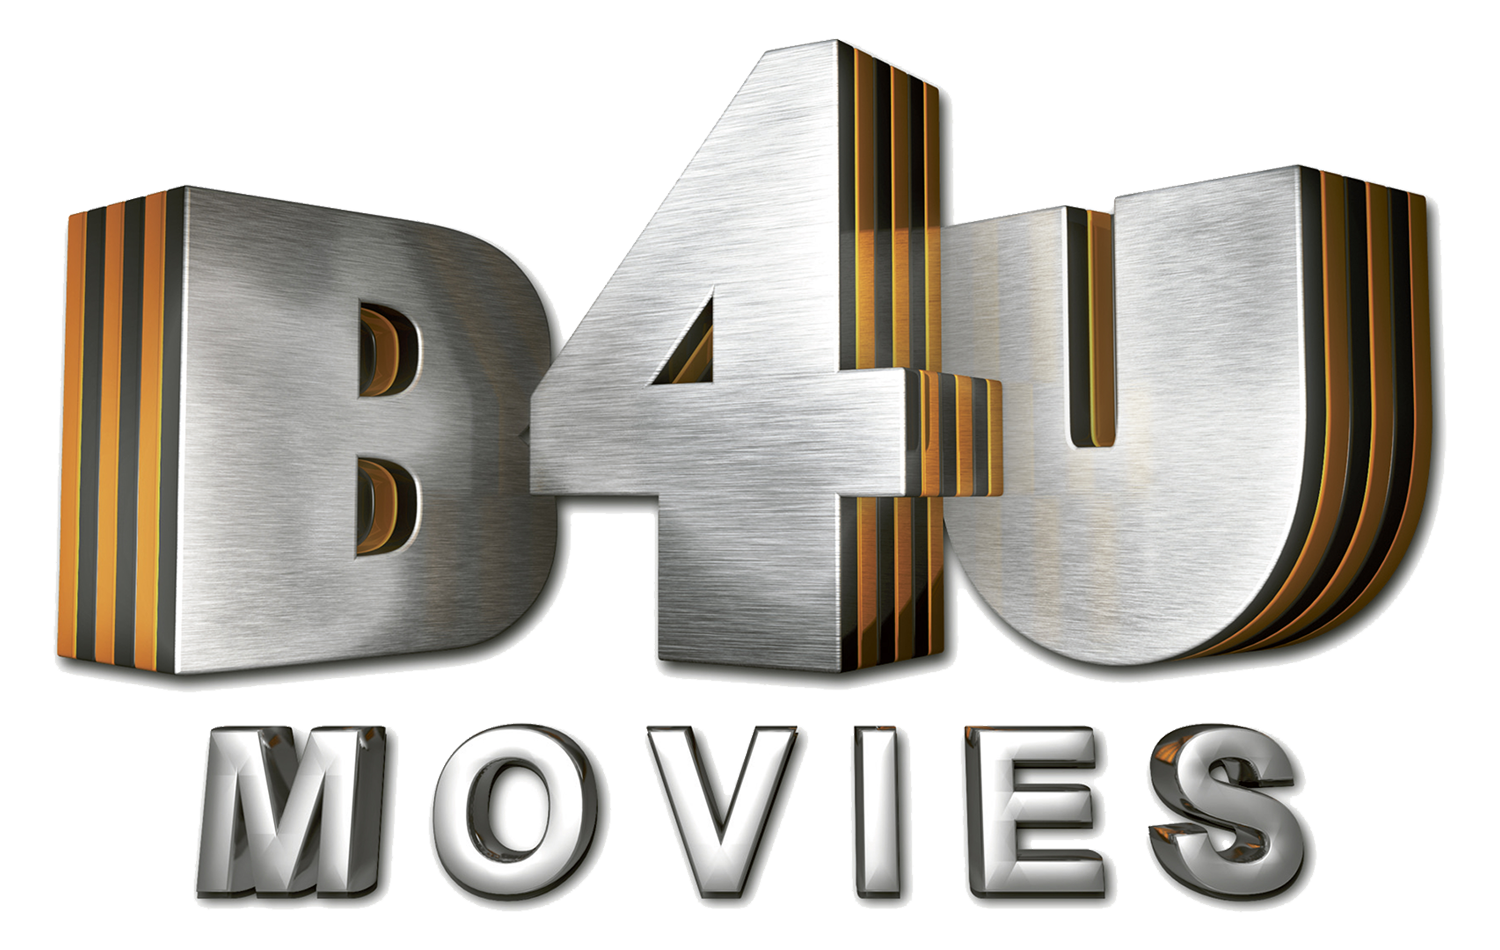 B4U Movies